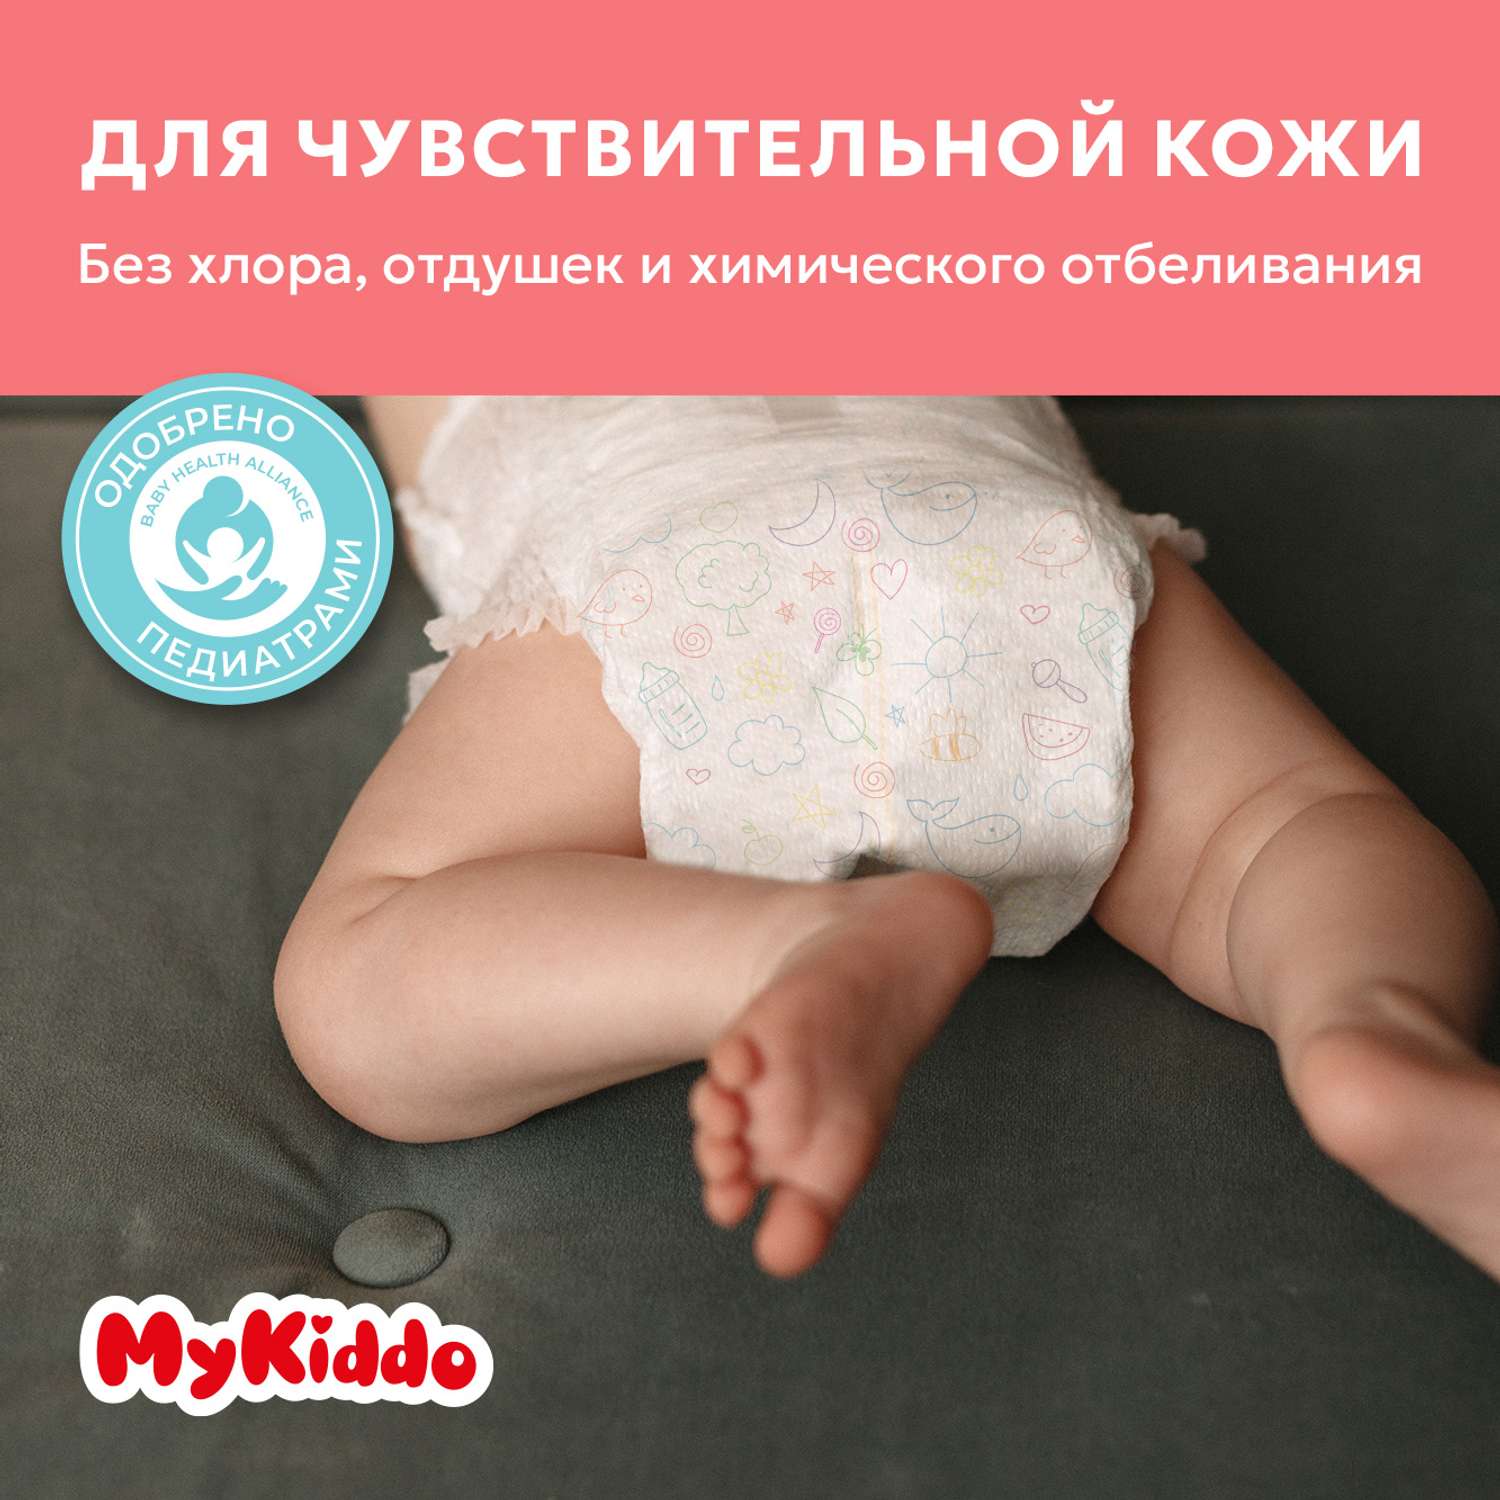 Подгузники MyKiddo Premium для новорожденных 0-6 кг размер S 3уп по 24 шт - фото 4